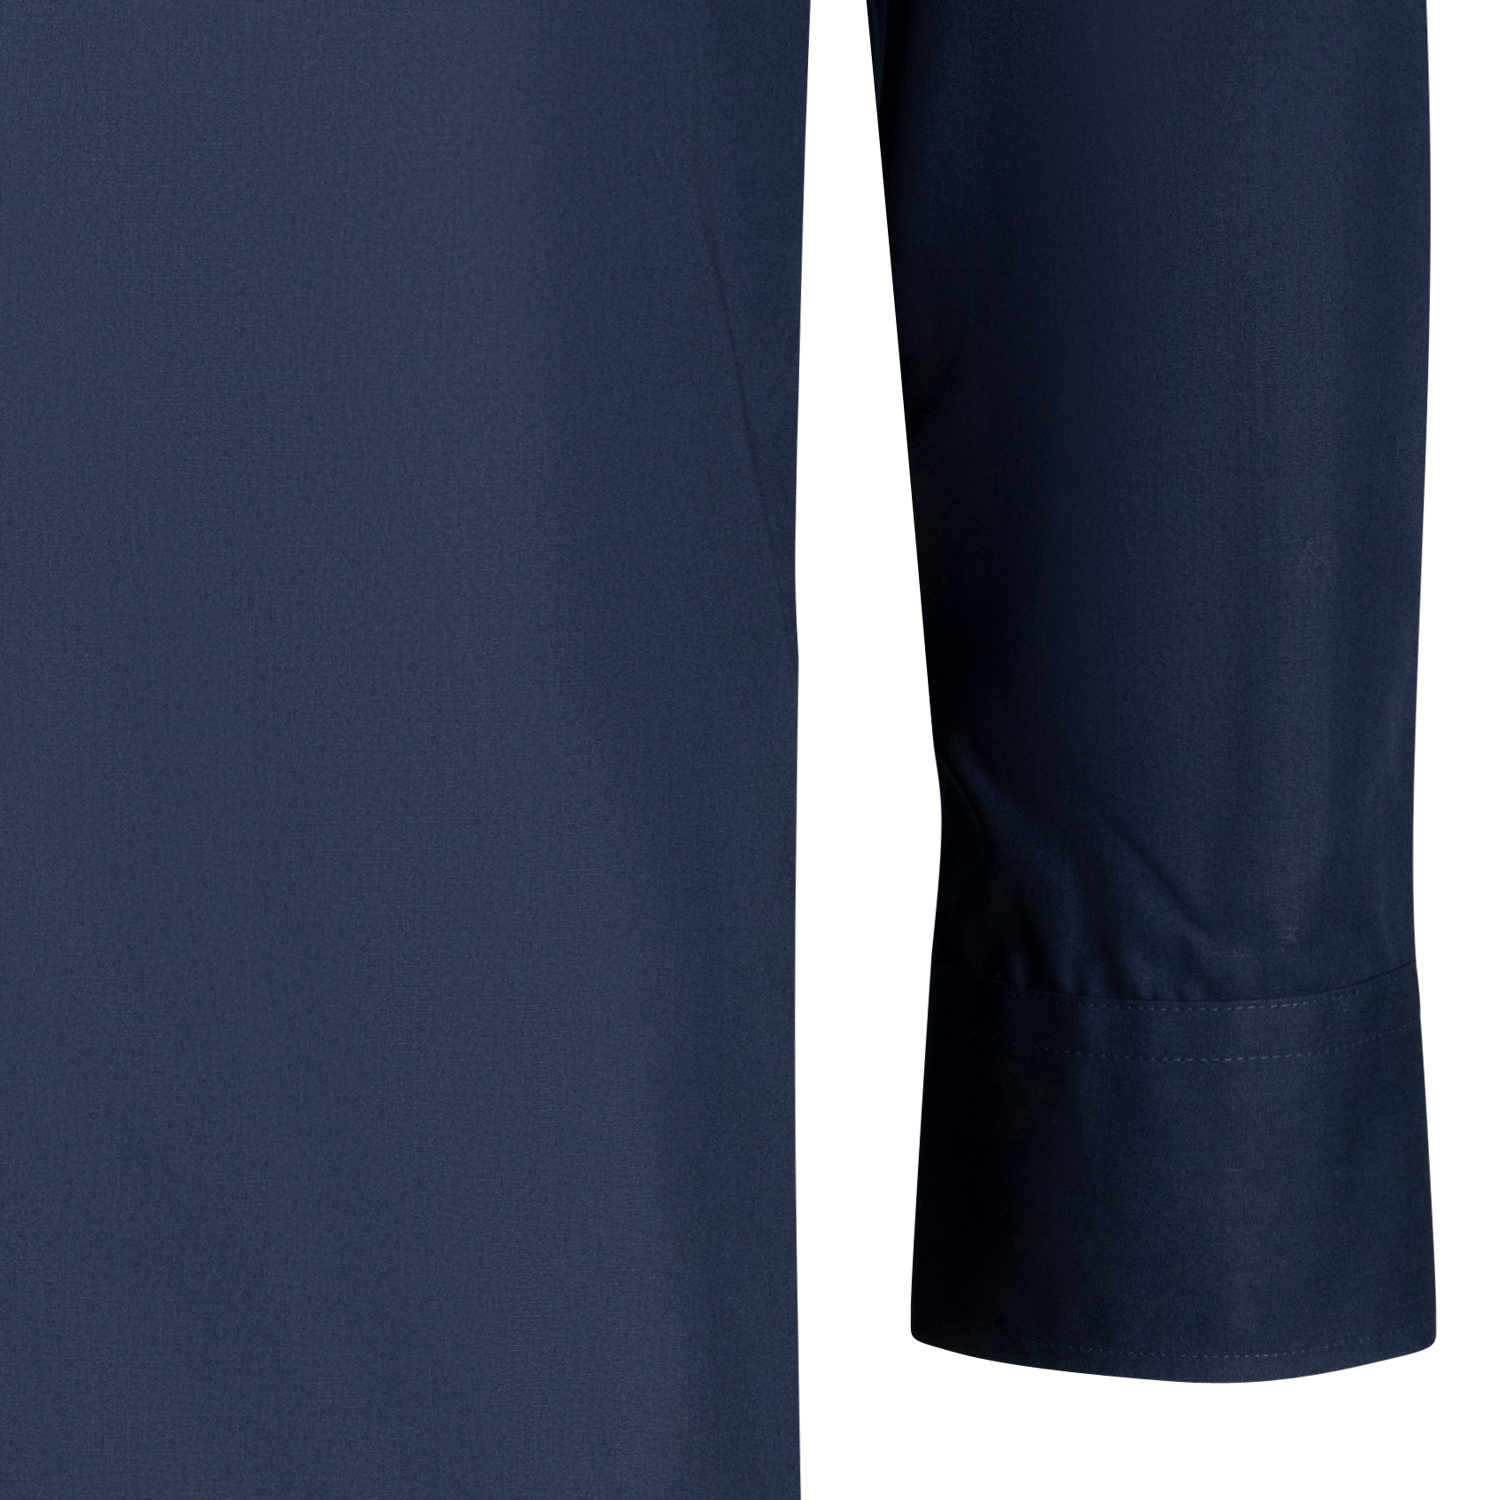 Langärmliges Hemd Comfort Fit für Herren in dunkelblau von CASAMODA bis Übergröße 7XL - bügelfrei